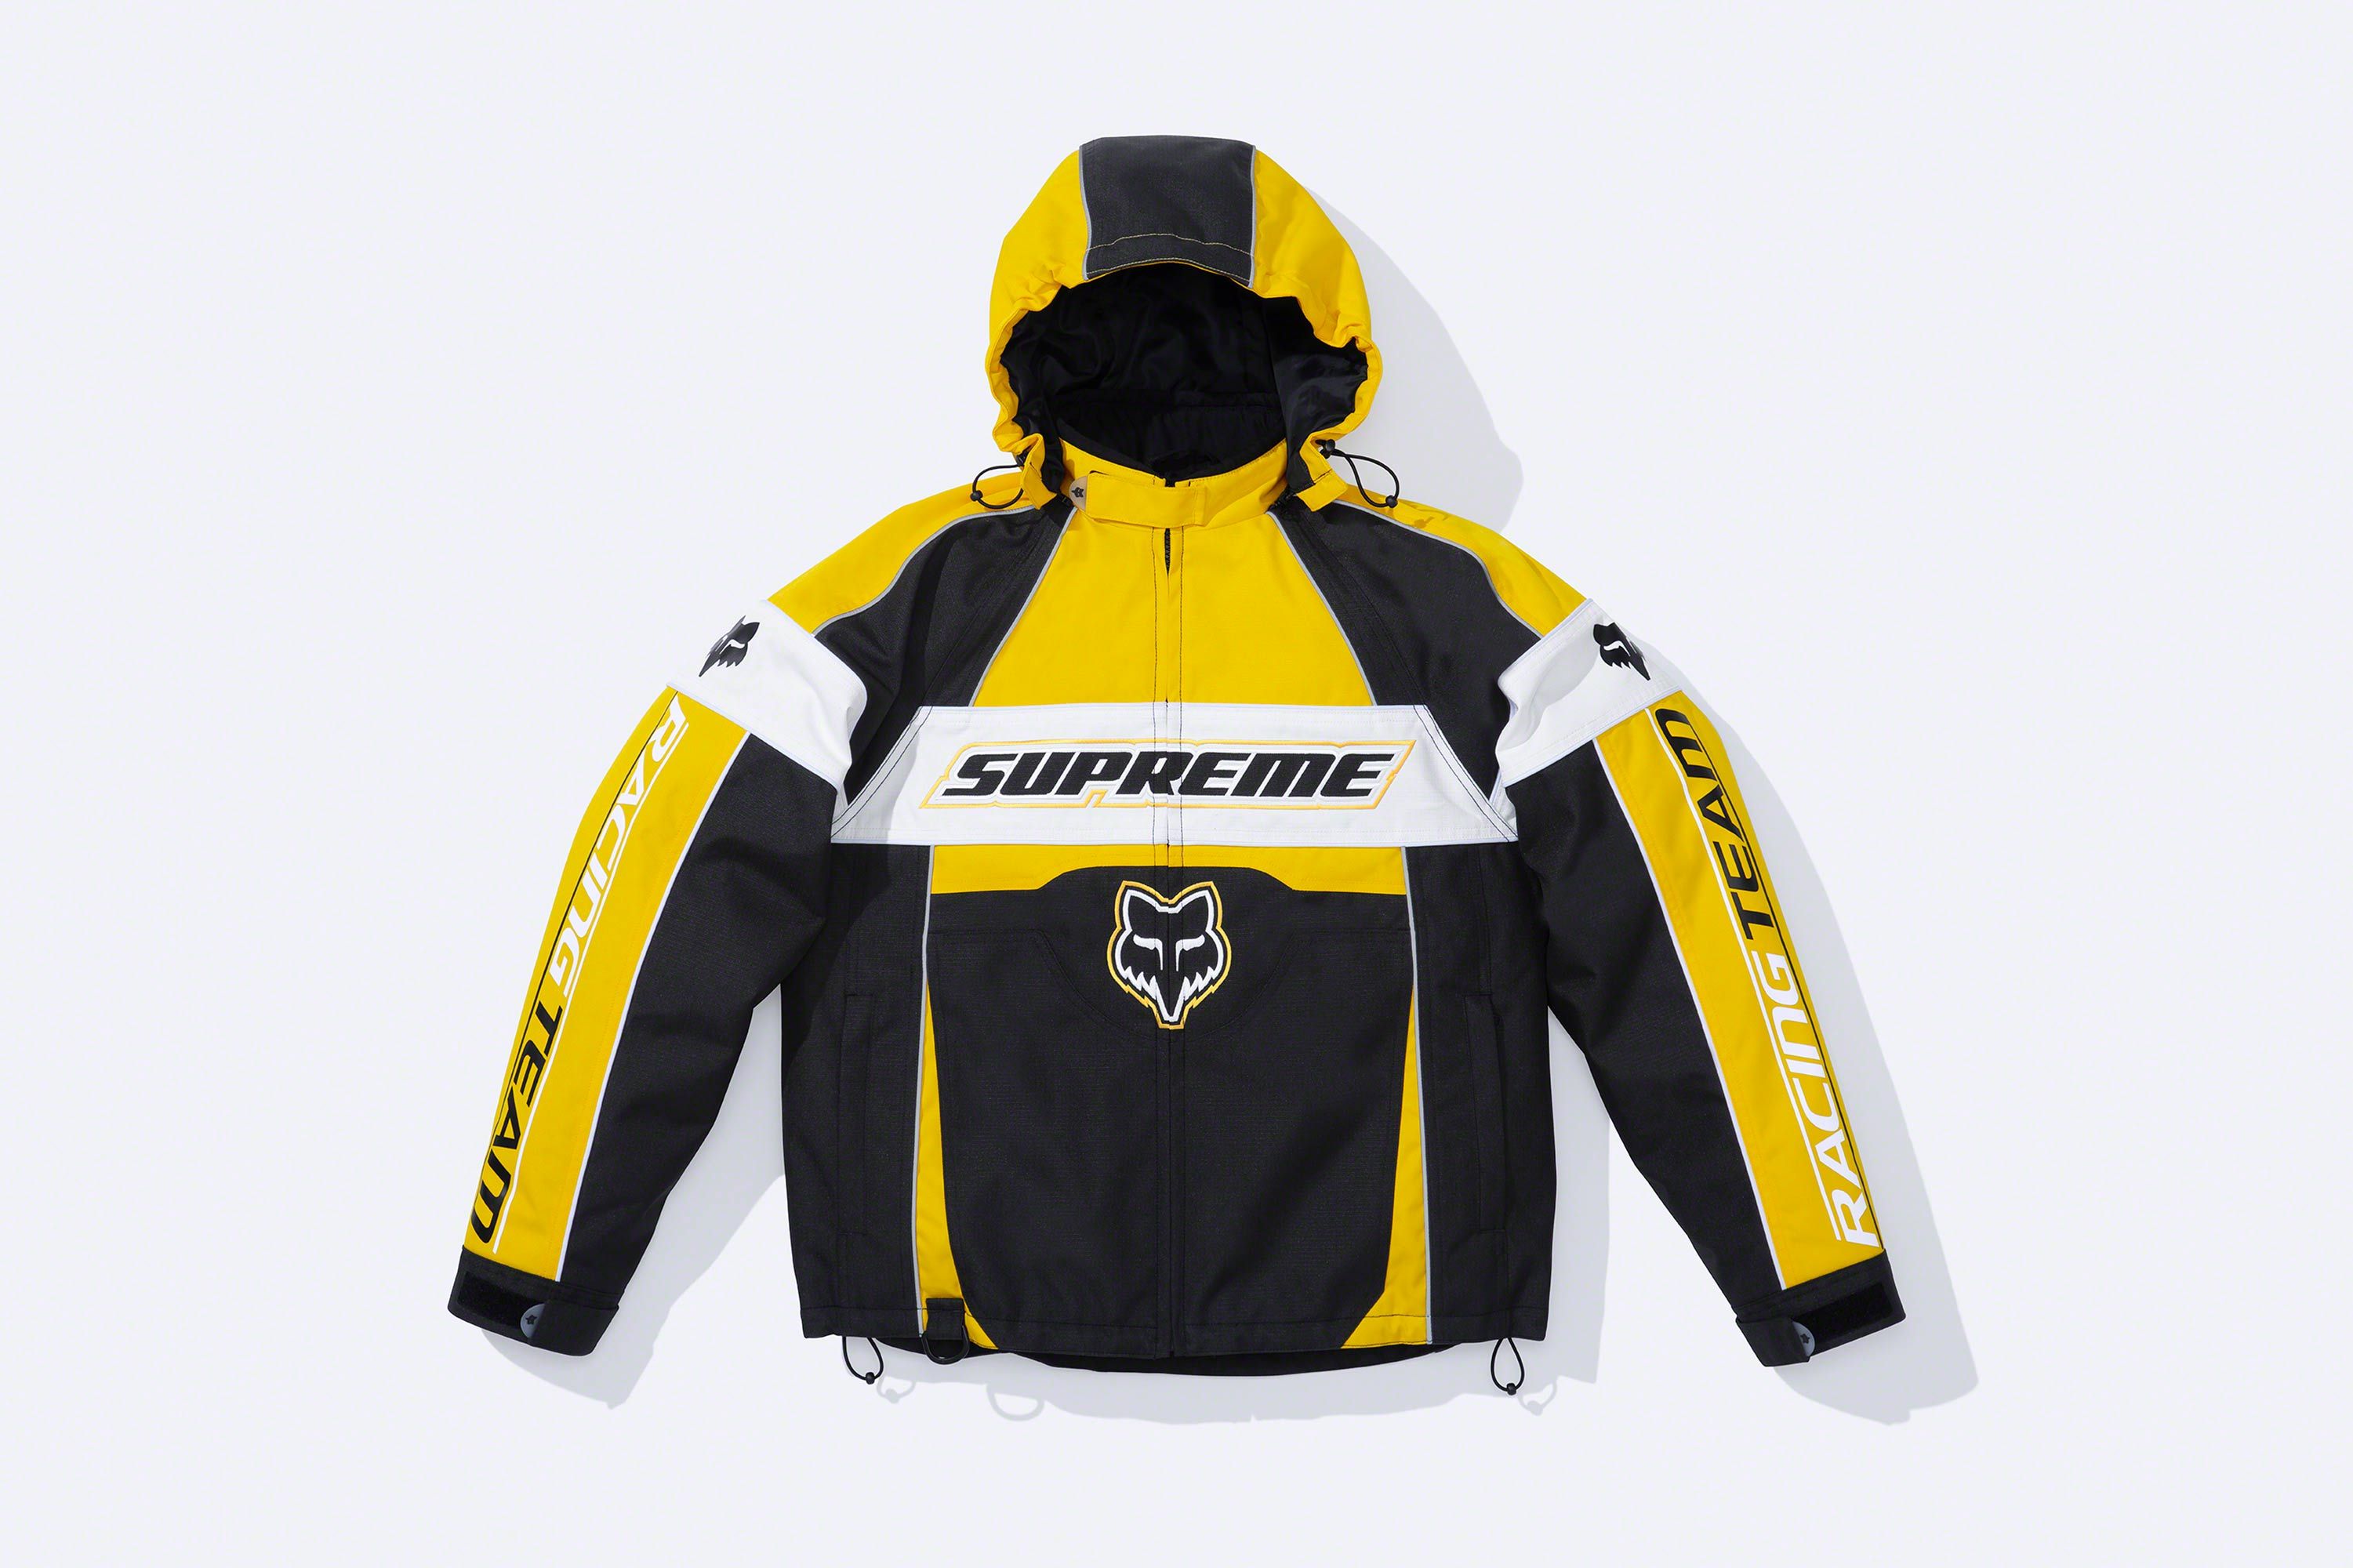 Supreme®/Fox Racing® – Supreme